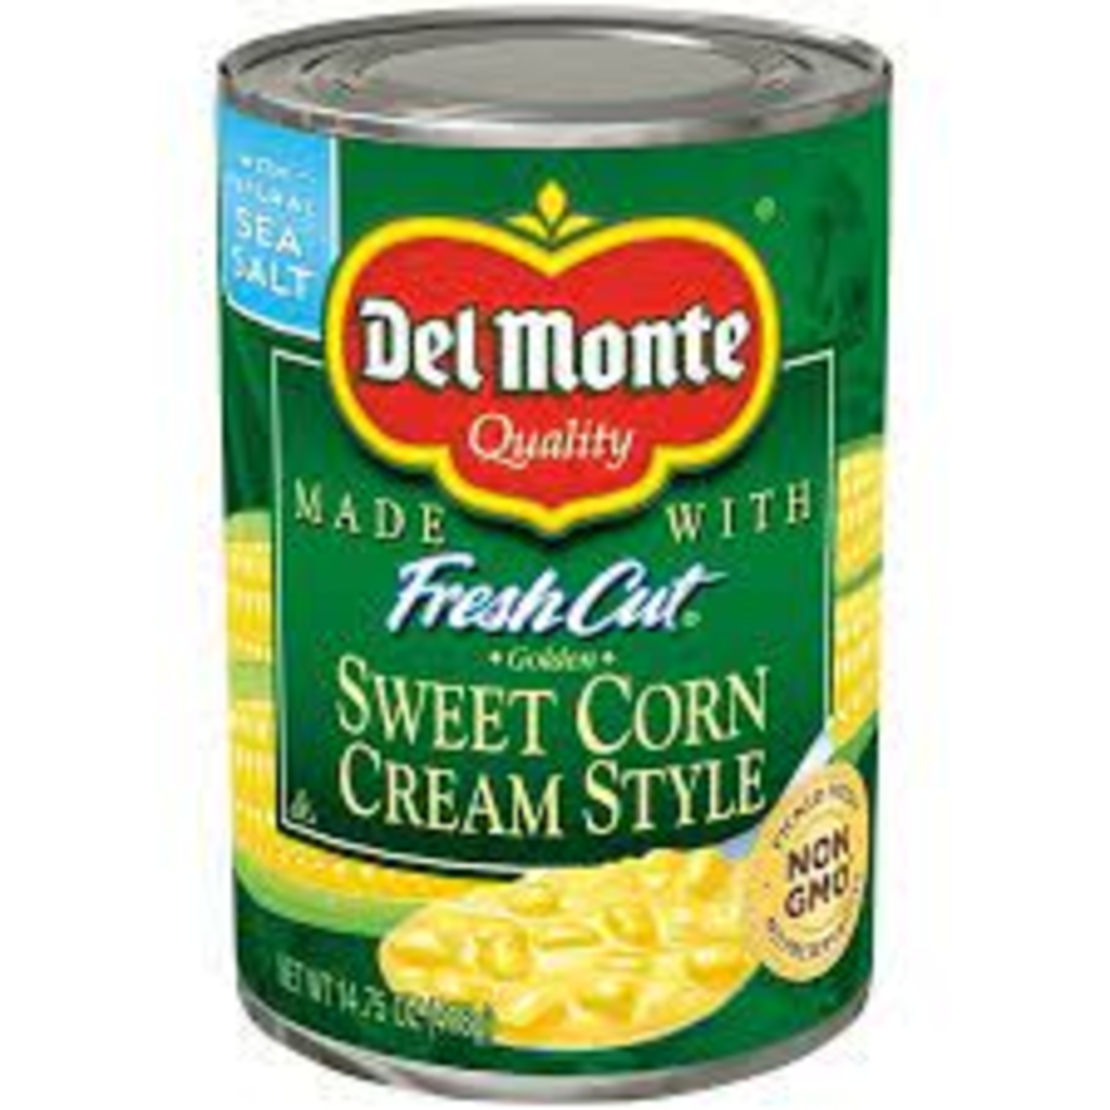 Del Monte Fresh Cut Cream Style Corn 425 grms